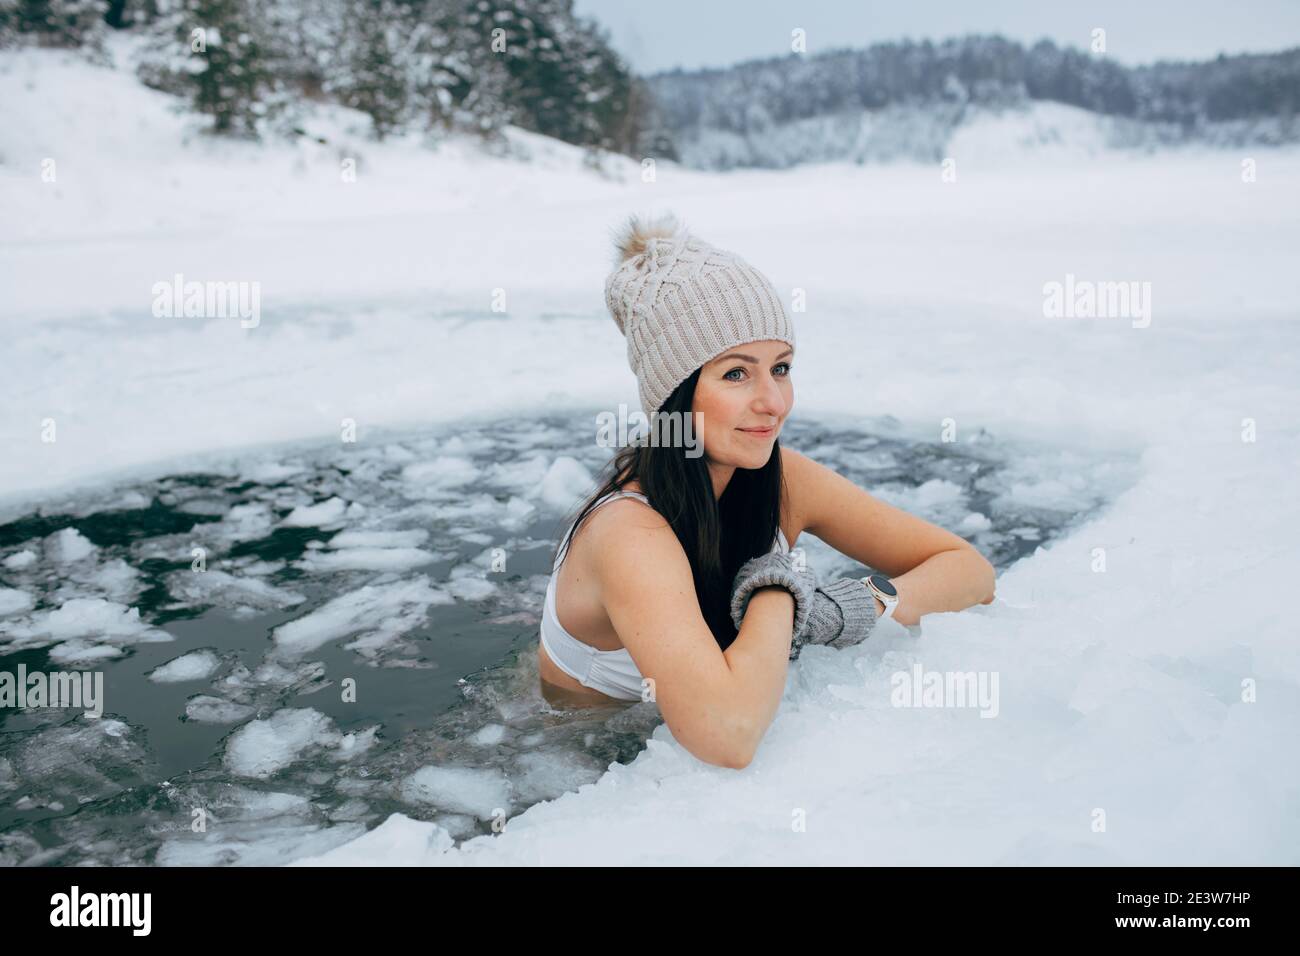 Schwimmen im Winter. Frau in gefrorenem See Eisloch. Wie man im kalten Wasser schwimmt. Schöne junge Frau lächelt. Badekleidung mit Mütze und Handschuhen. Stockfoto